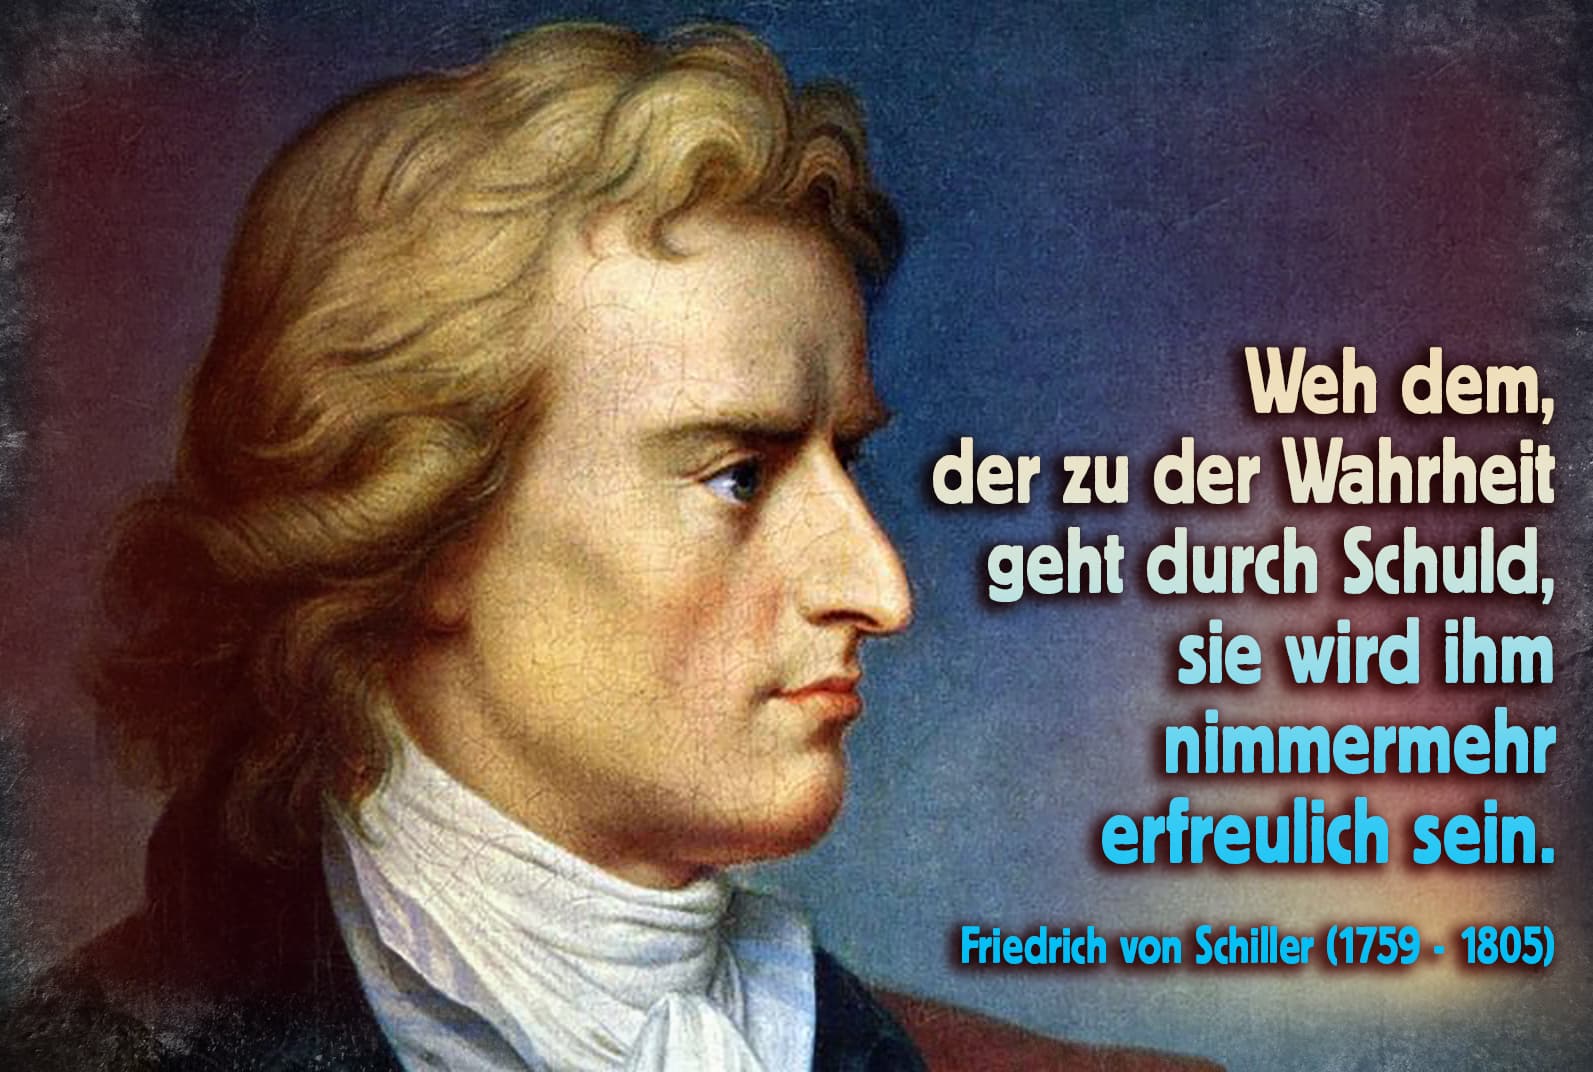 Schiller, Friedrich zur Wahrheit und Schuld